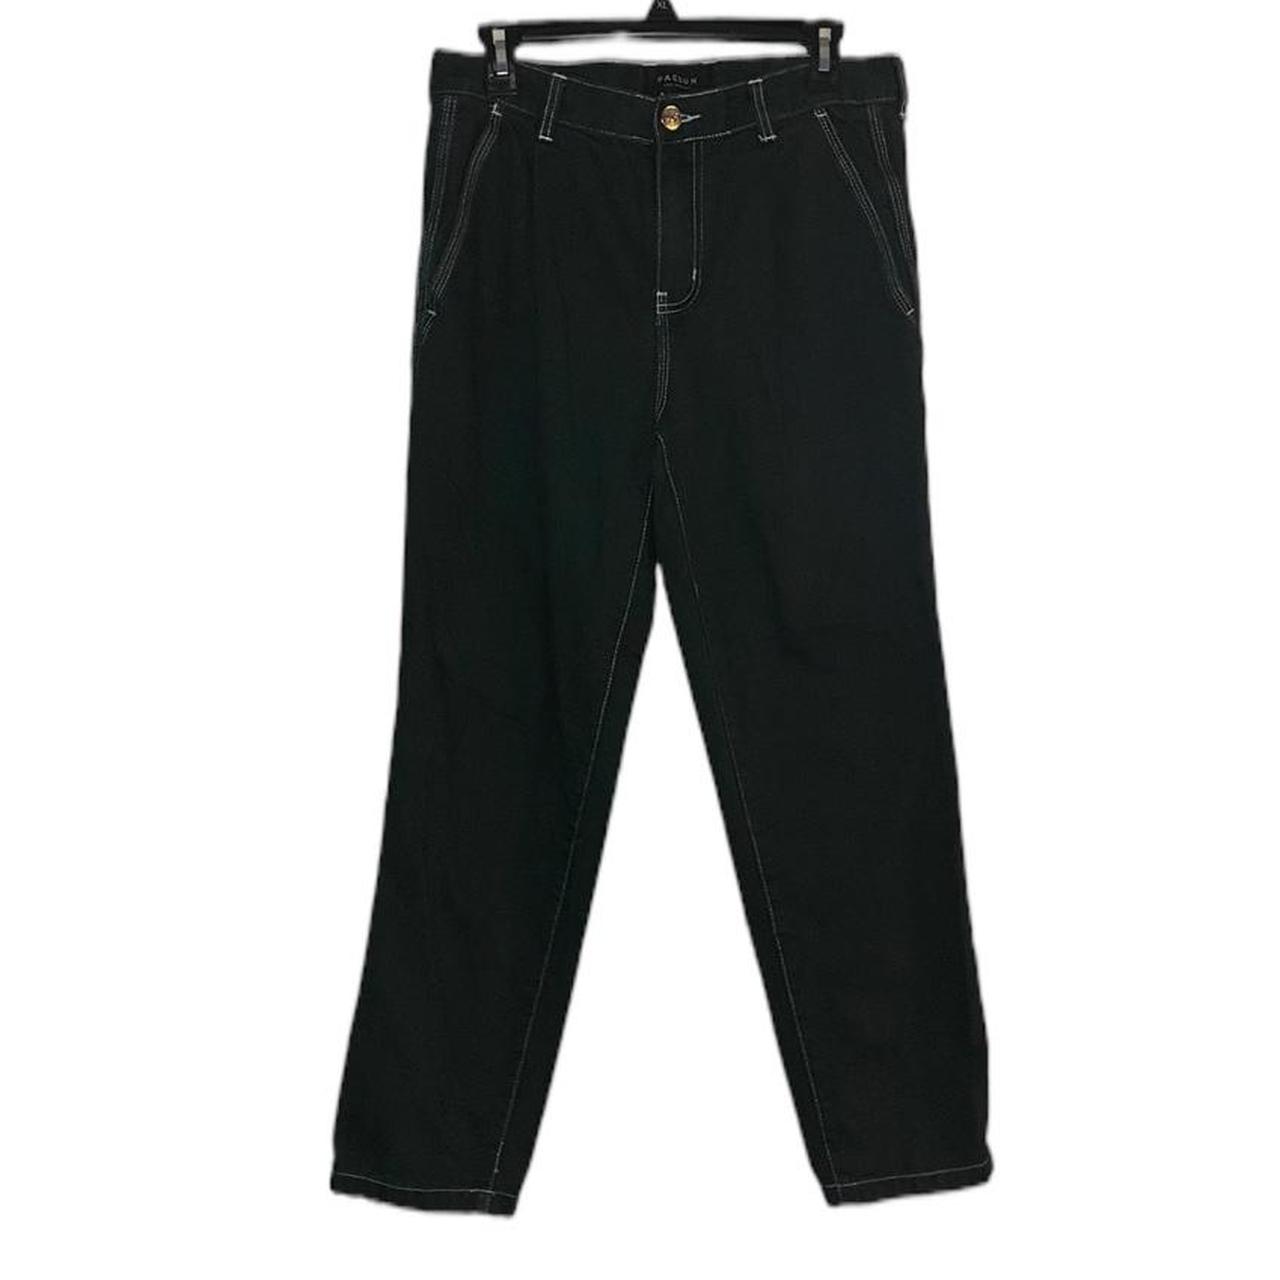 Vintage Green Denim Jeans Size 30x30 #jeans #denim... - Depop